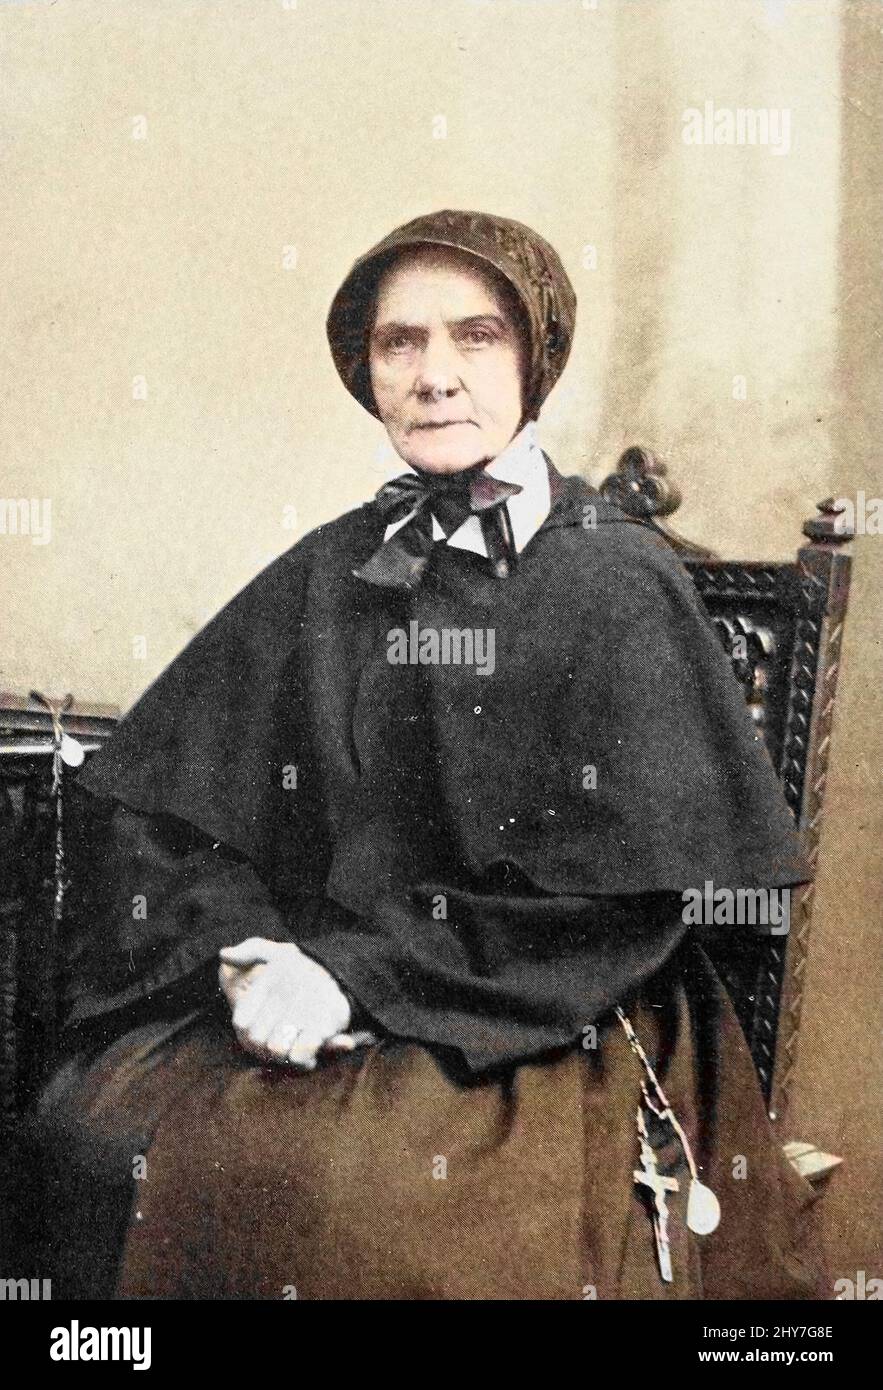 Maschinenfarbig Mary O'Connell (besser bekannt als Sister Anthony, S.C.) (1814 – 8. Dezember 1897) war ein irischer Einwanderer in die Vereinigten Staaten, der eine römisch-katholische Ordensschwester wurde. Als Schwester der Wohltätigkeitsorganisation von Cincinnati diente sie mit Auszeichnung als Krankenschwester an der Front des amerikanischen Bürgerkrieges. Ihre Arbeit mit Verwundeten und im Gesundheitswesen im Allgemeinen veranlasste sie, als „der Engel des Schlachtfeldes“ und „die Florence Nightingale of America“ bekannt zu werden. Ihr Porträt hängt in der Smithsonian Institution in Washington, DC. Aus dem Buch "Engel des Schlachtfeldes: Eine Geschichte der Arbeit Stockfoto